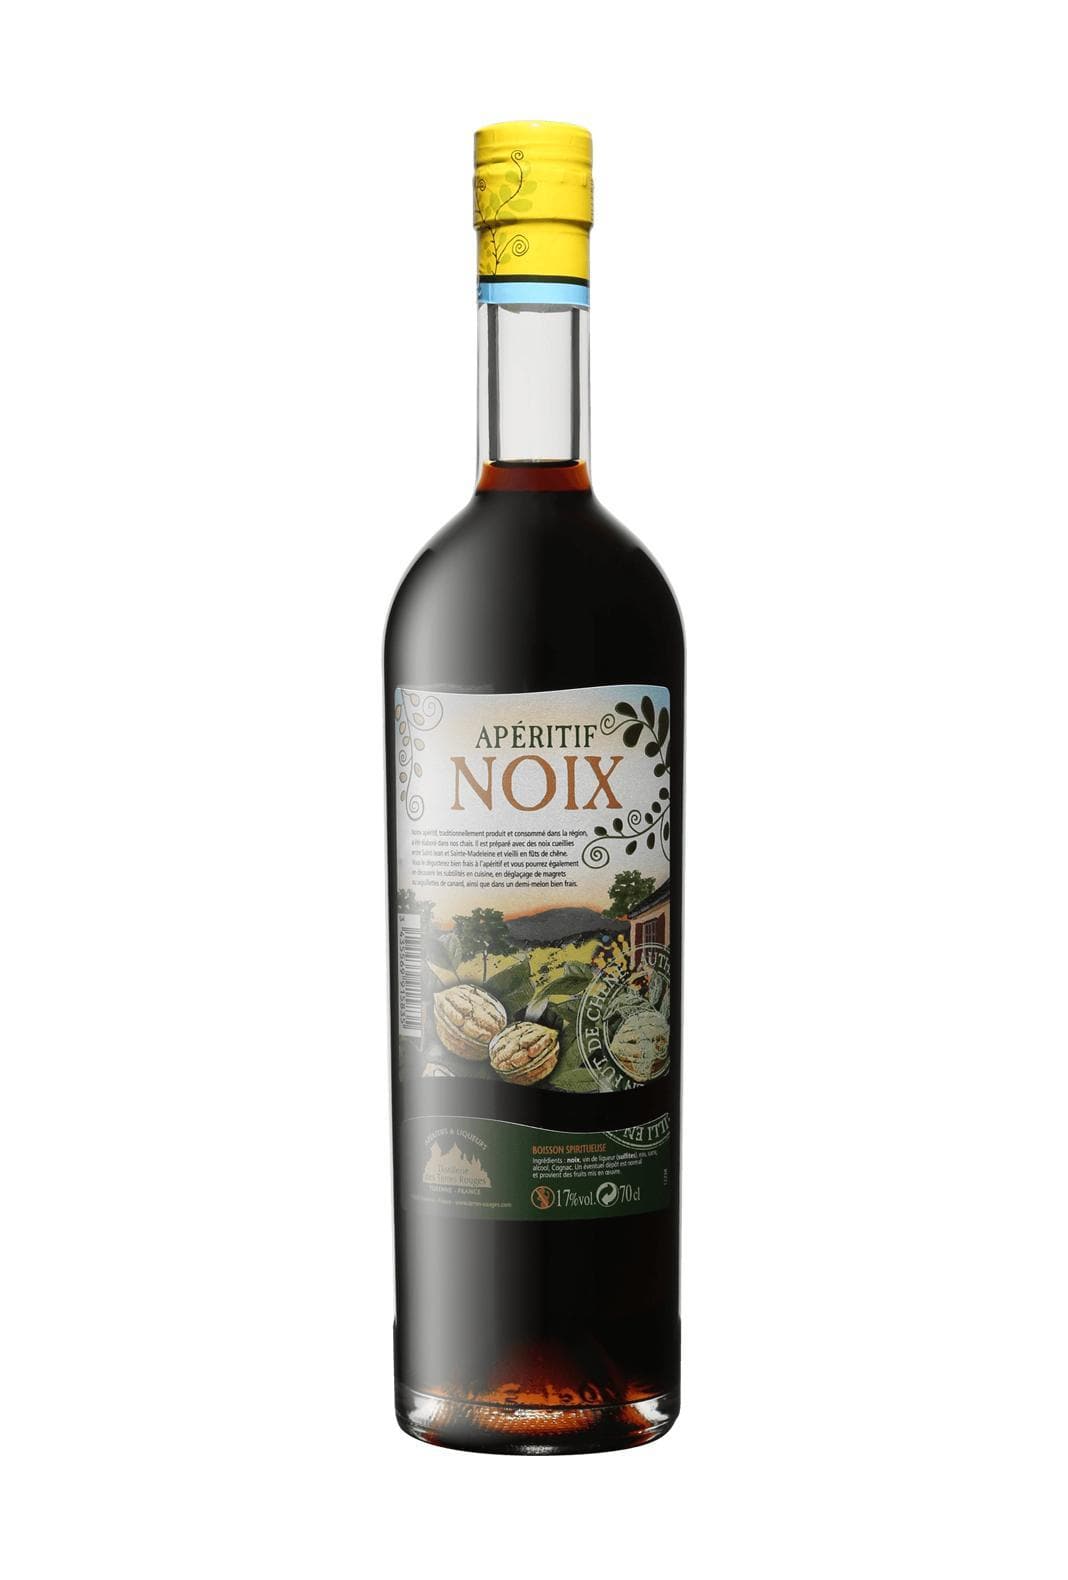 Vedrenne-Terres Rouges Aperitif Vin de Noix (Walnut & Wine liqueur) 17% 700ml | Liqueurs | Shop online at Spirits of France